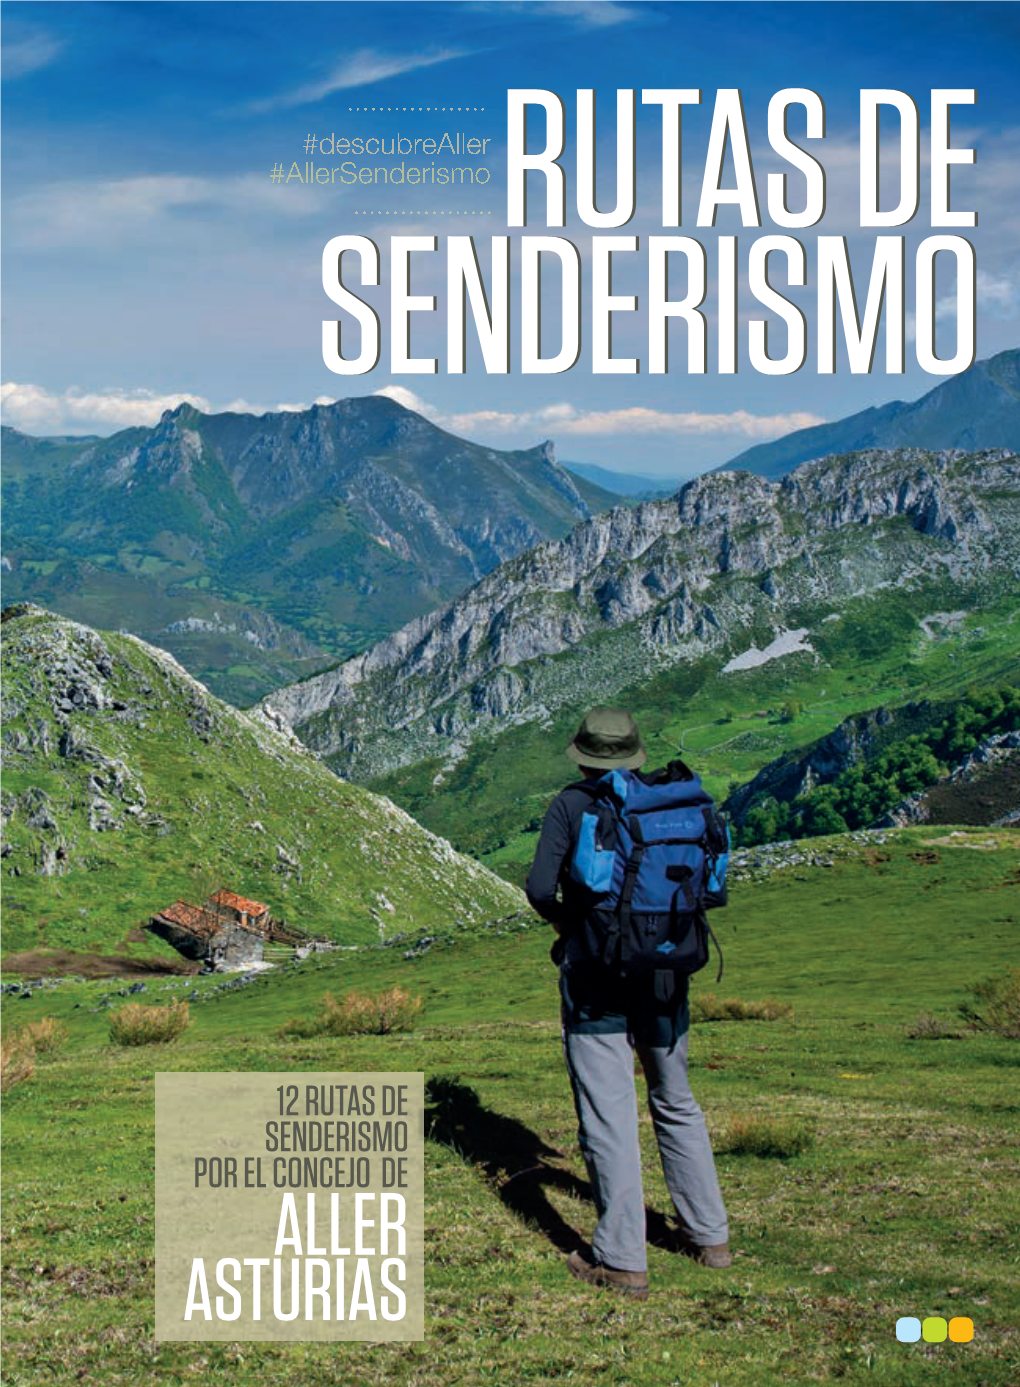 Rutas De Senderismo Por El Concejo De Aller Asturias Rutas De Senderismo